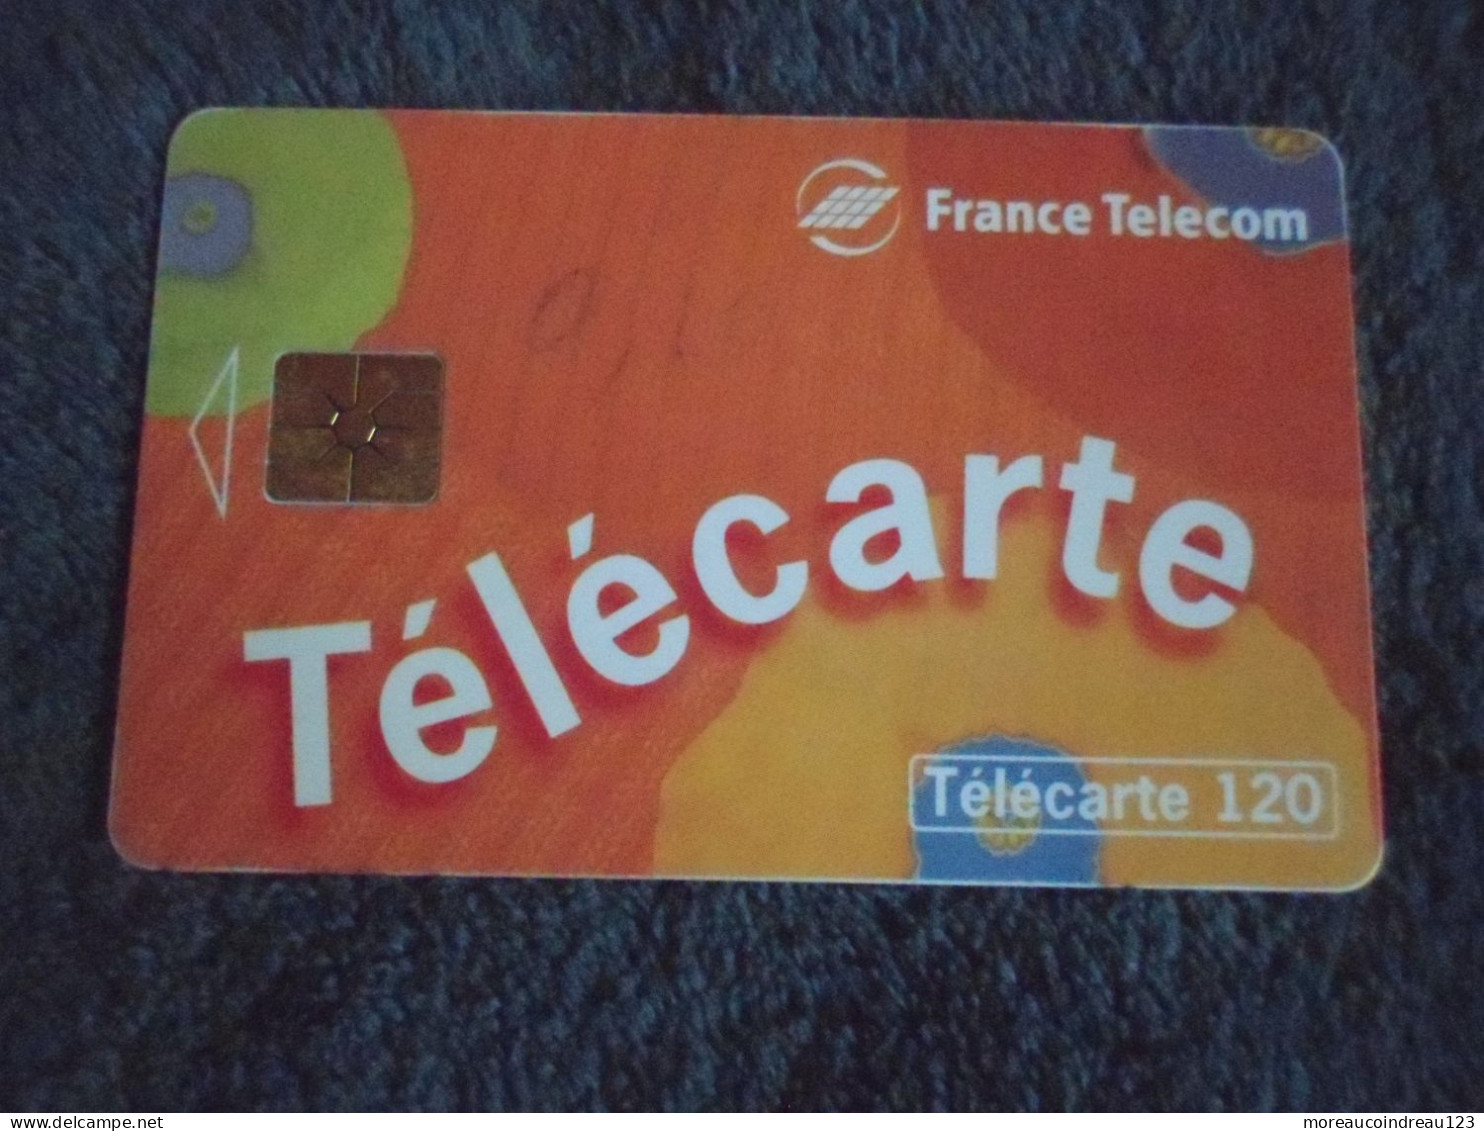 Télécarte France Télécom Pour Appeler Chez Vous - Telecom